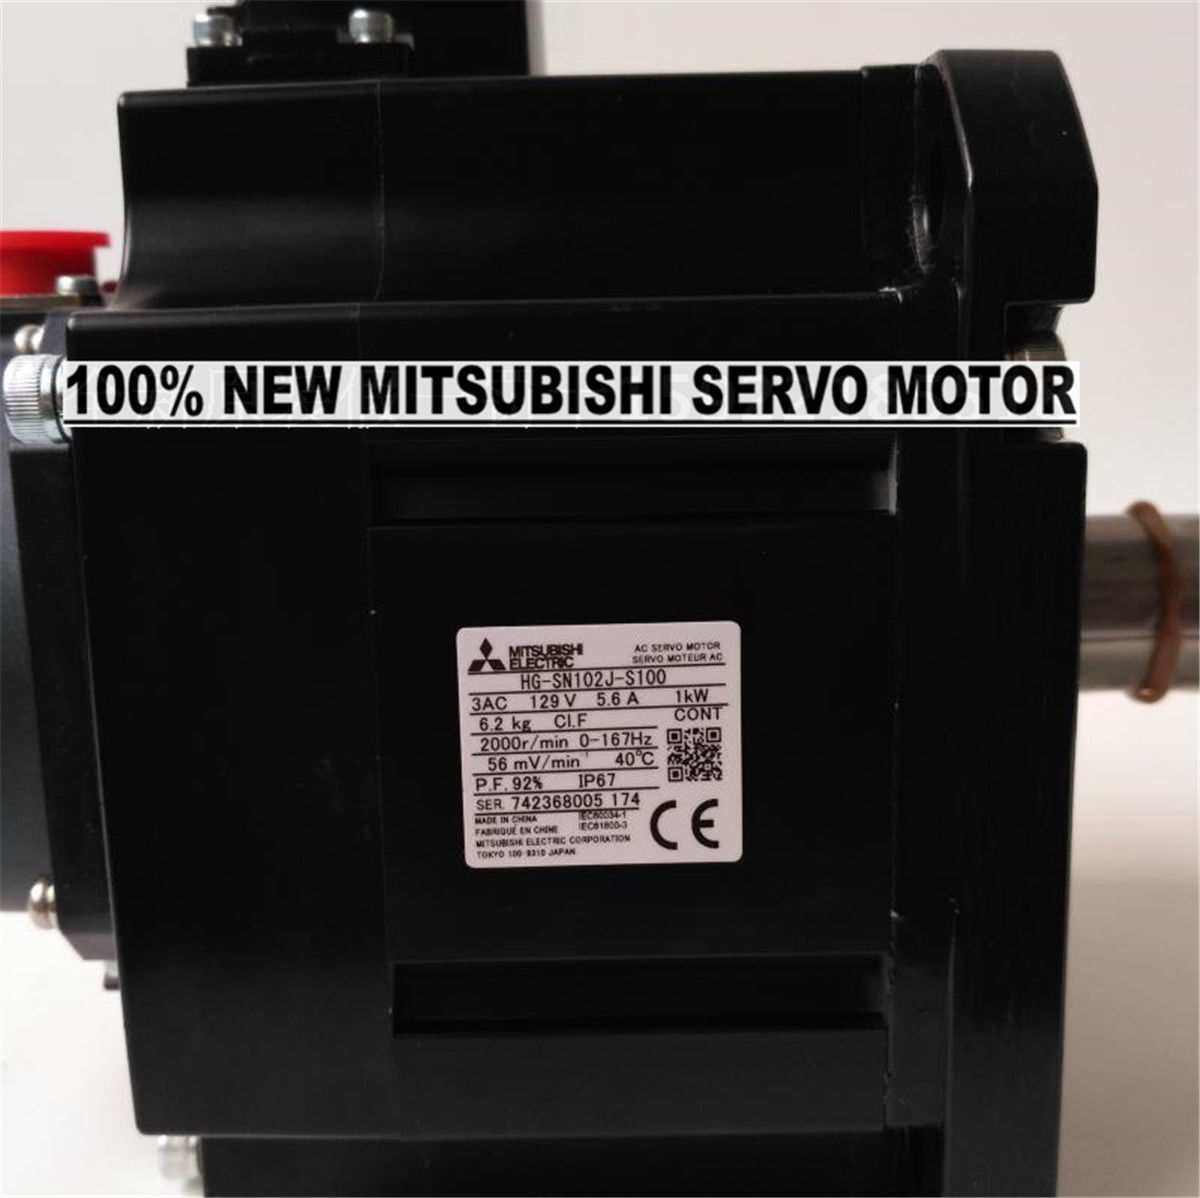 NEW Mitsubishi Servo Motor HG-SN102J-S100 in box HGSN102JS100 - Click Image to Close